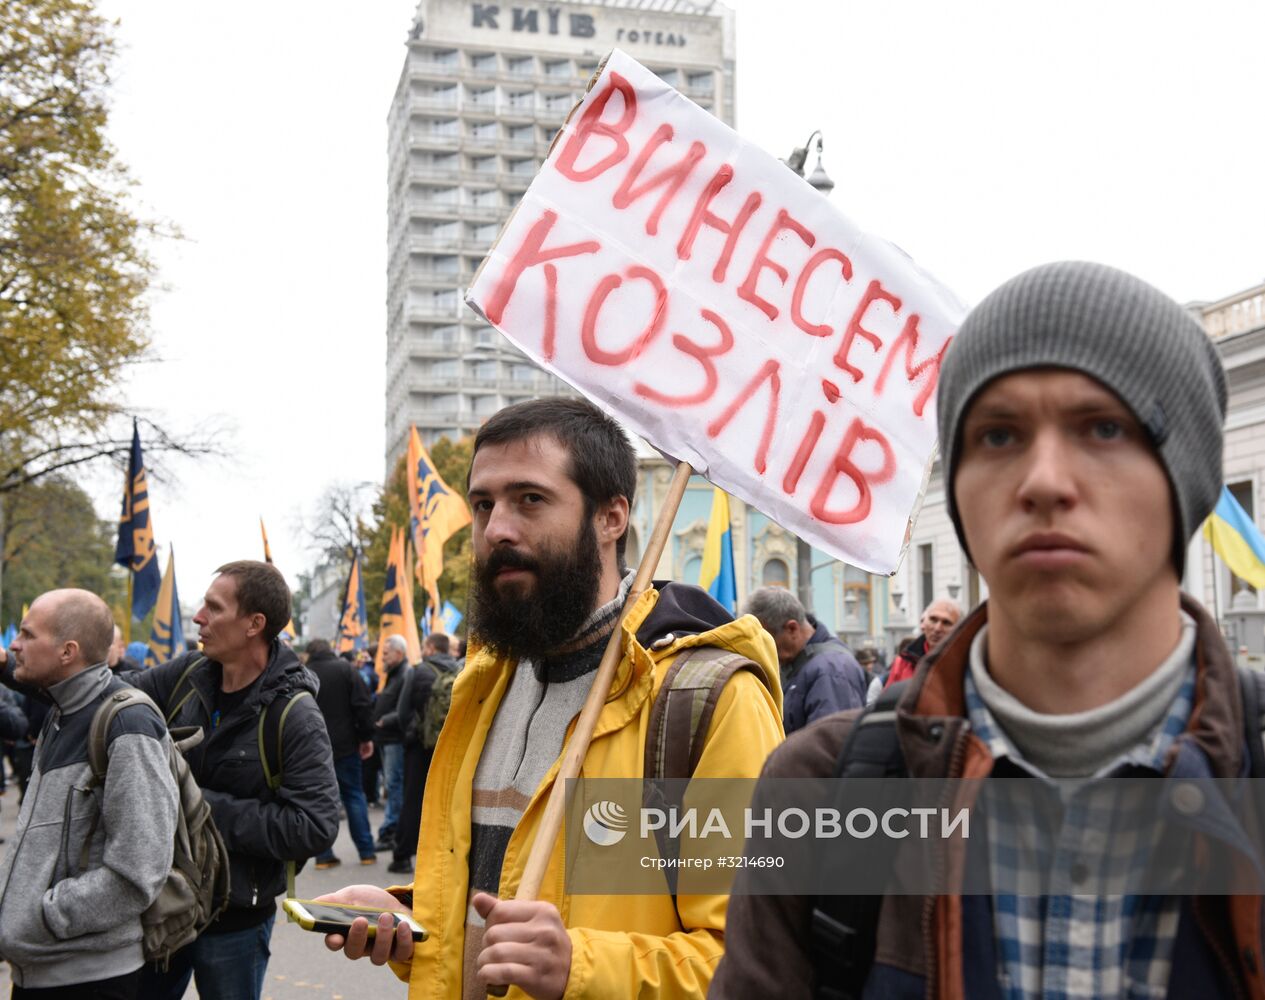 Акция в Киеве с требованием реформ